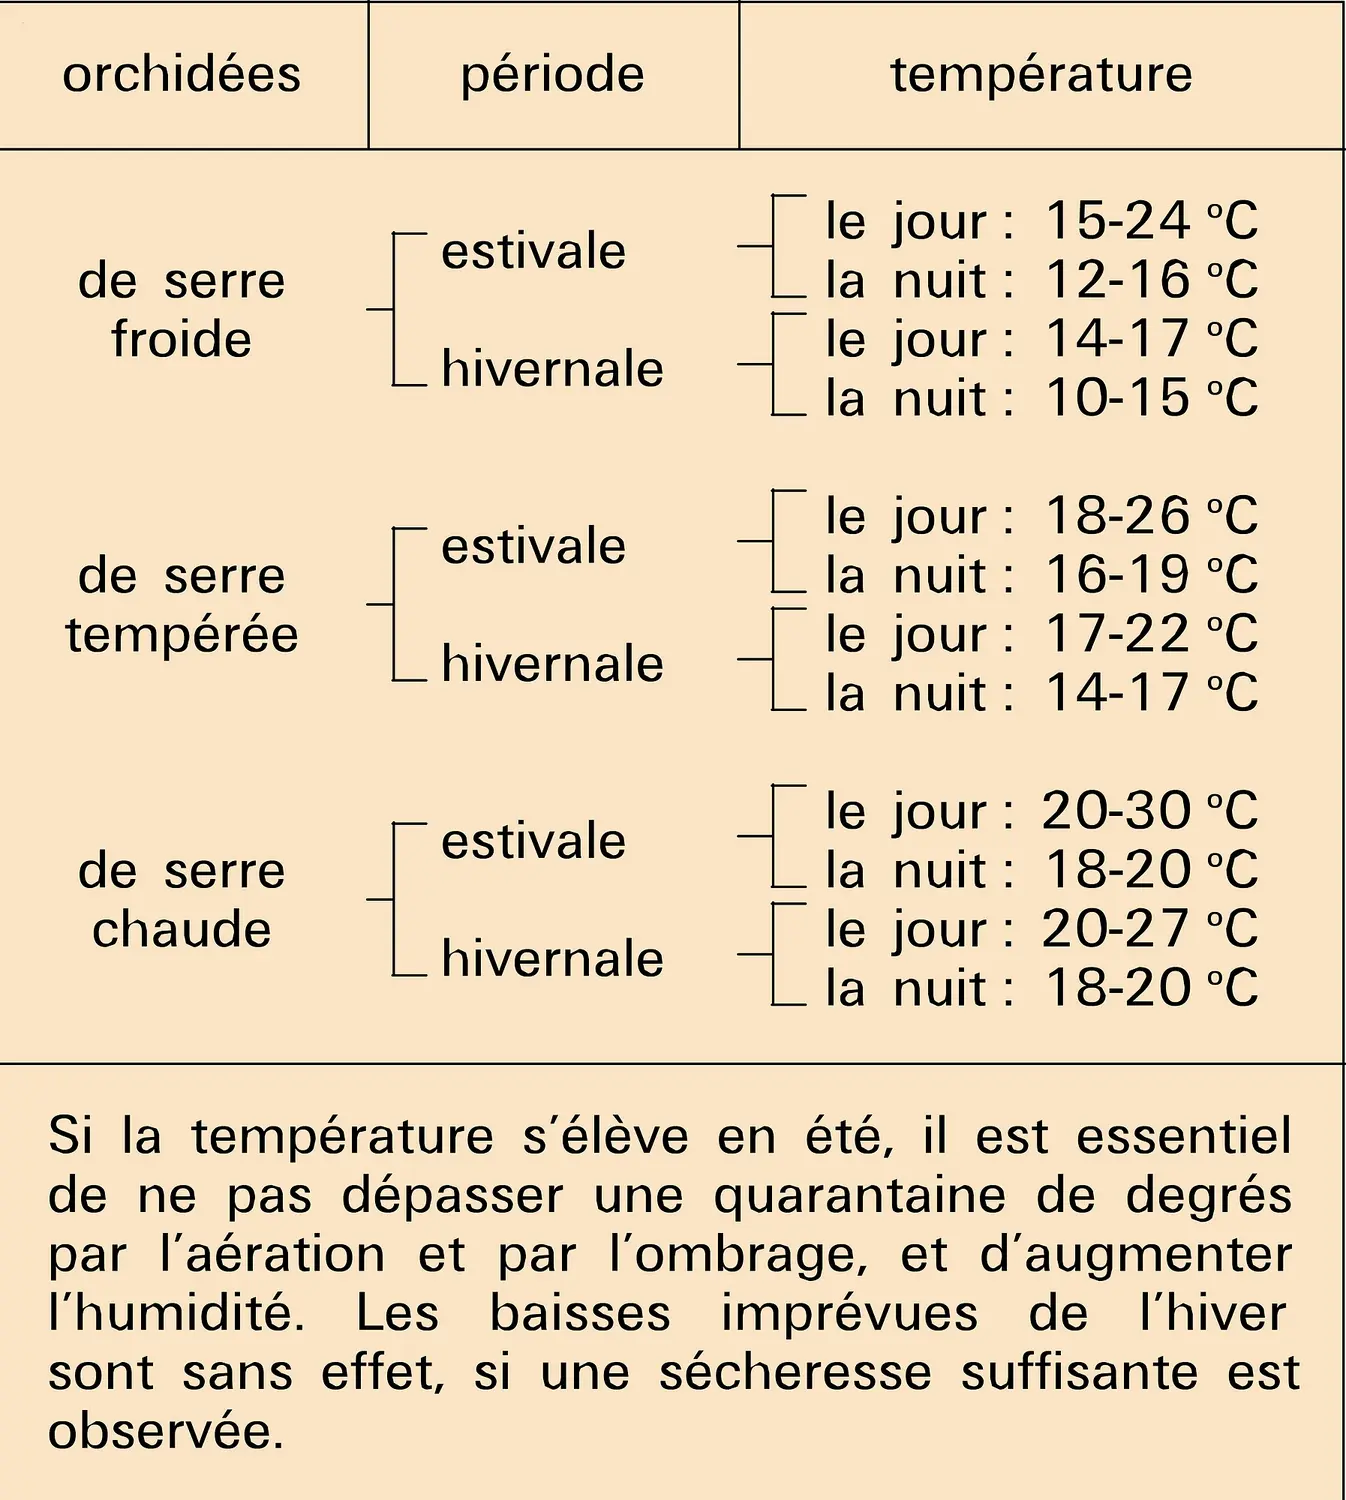 Conditions de température